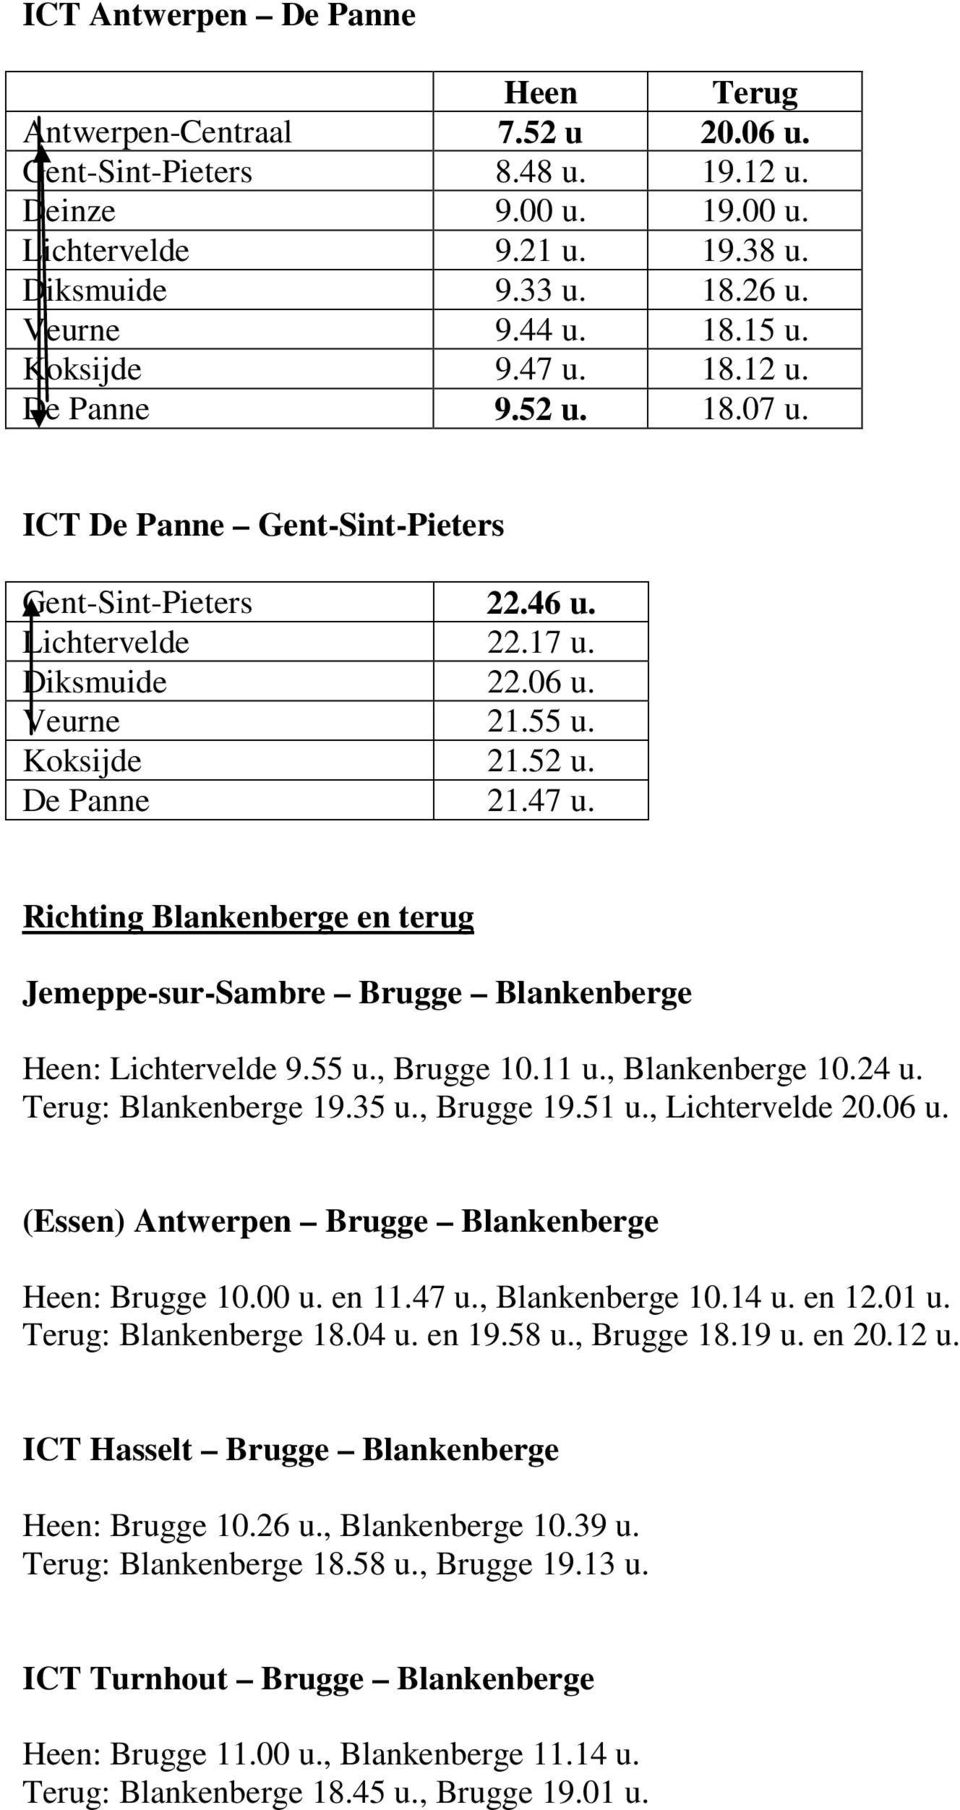 47 Richting Blankenberge en terug Jemeppe-sur-Sambre Brugge Blankenberge : Lichtervelde 9.55, Brugge 10.11, Blankenberge 10.24 : Blankenberge 19.35, Brugge 19.51, Lichtervelde 20.